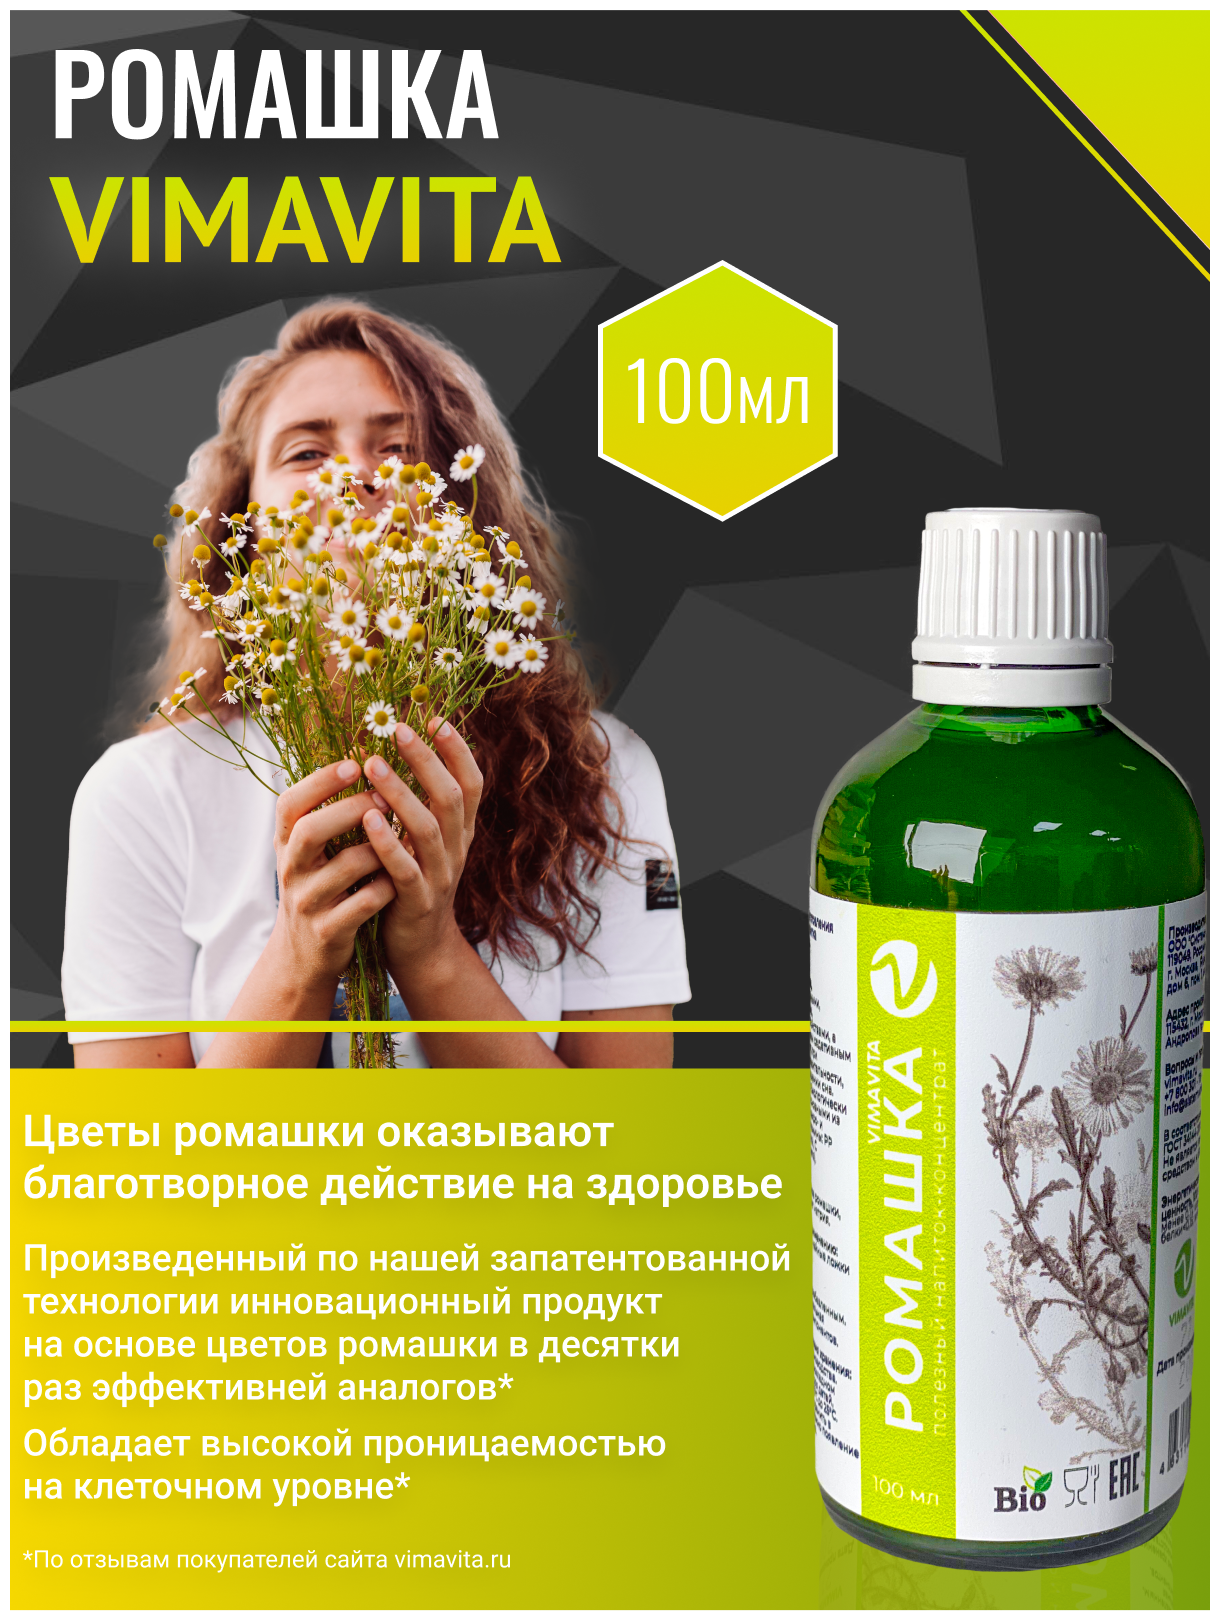 Противовоспалительный спазмольгетик/Ромашка VIMAVITA Концентрат 100 мл